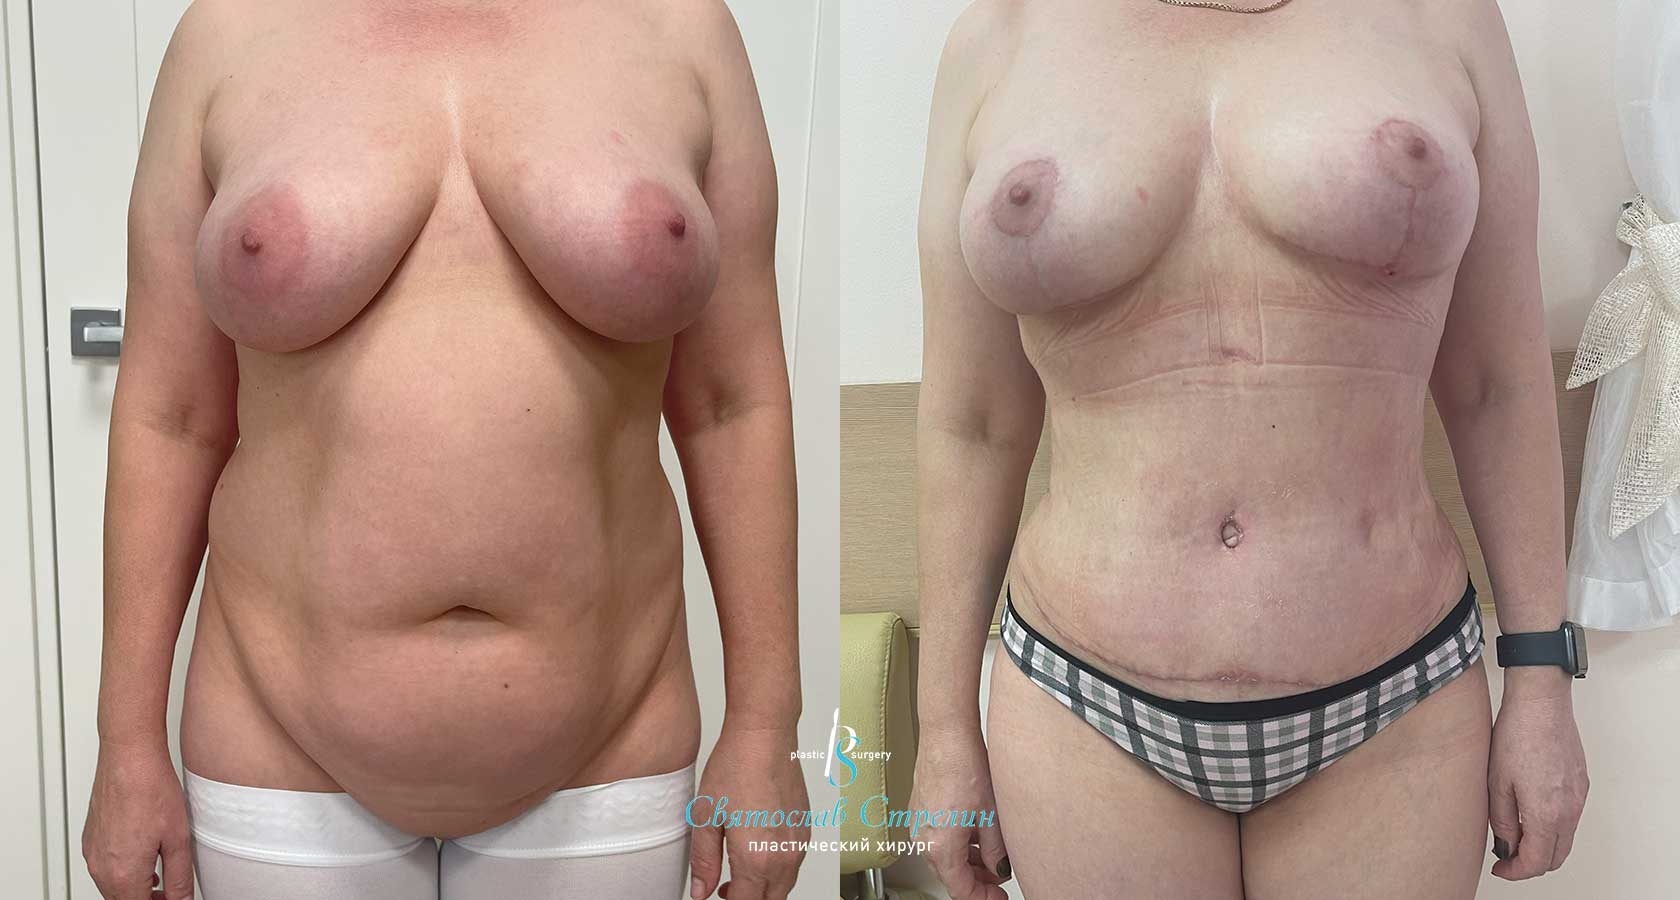 Абдоминопластика, Vaser-липосакция, подтяжка груди, 1 месяц после операции